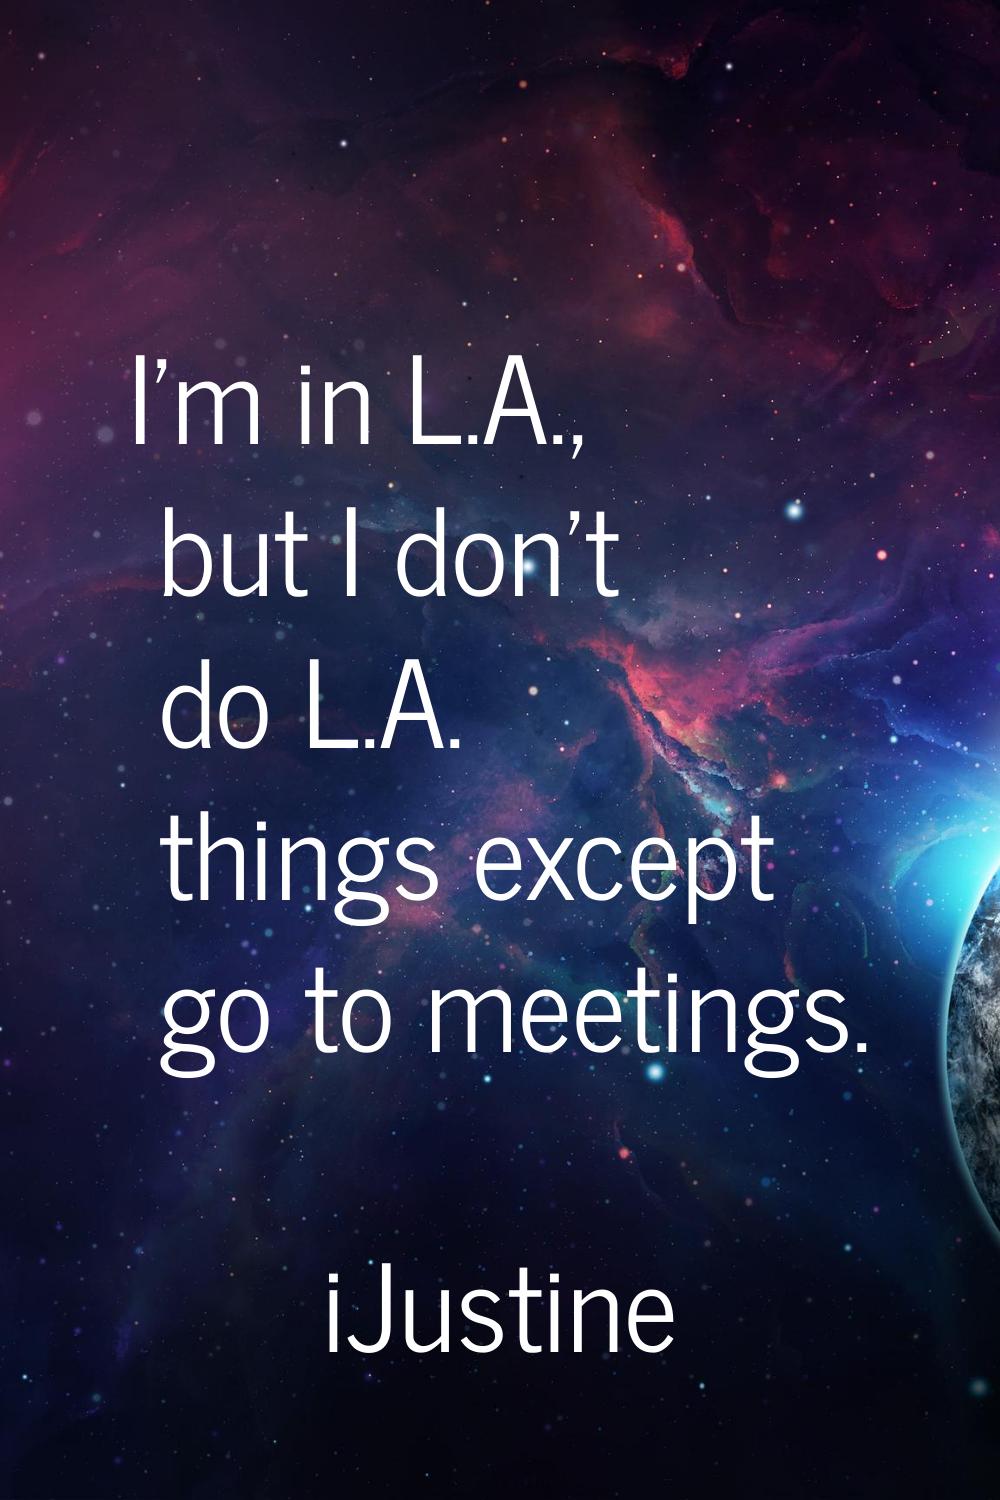 I'm in L.A., but I don't do L.A. things except go to meetings.